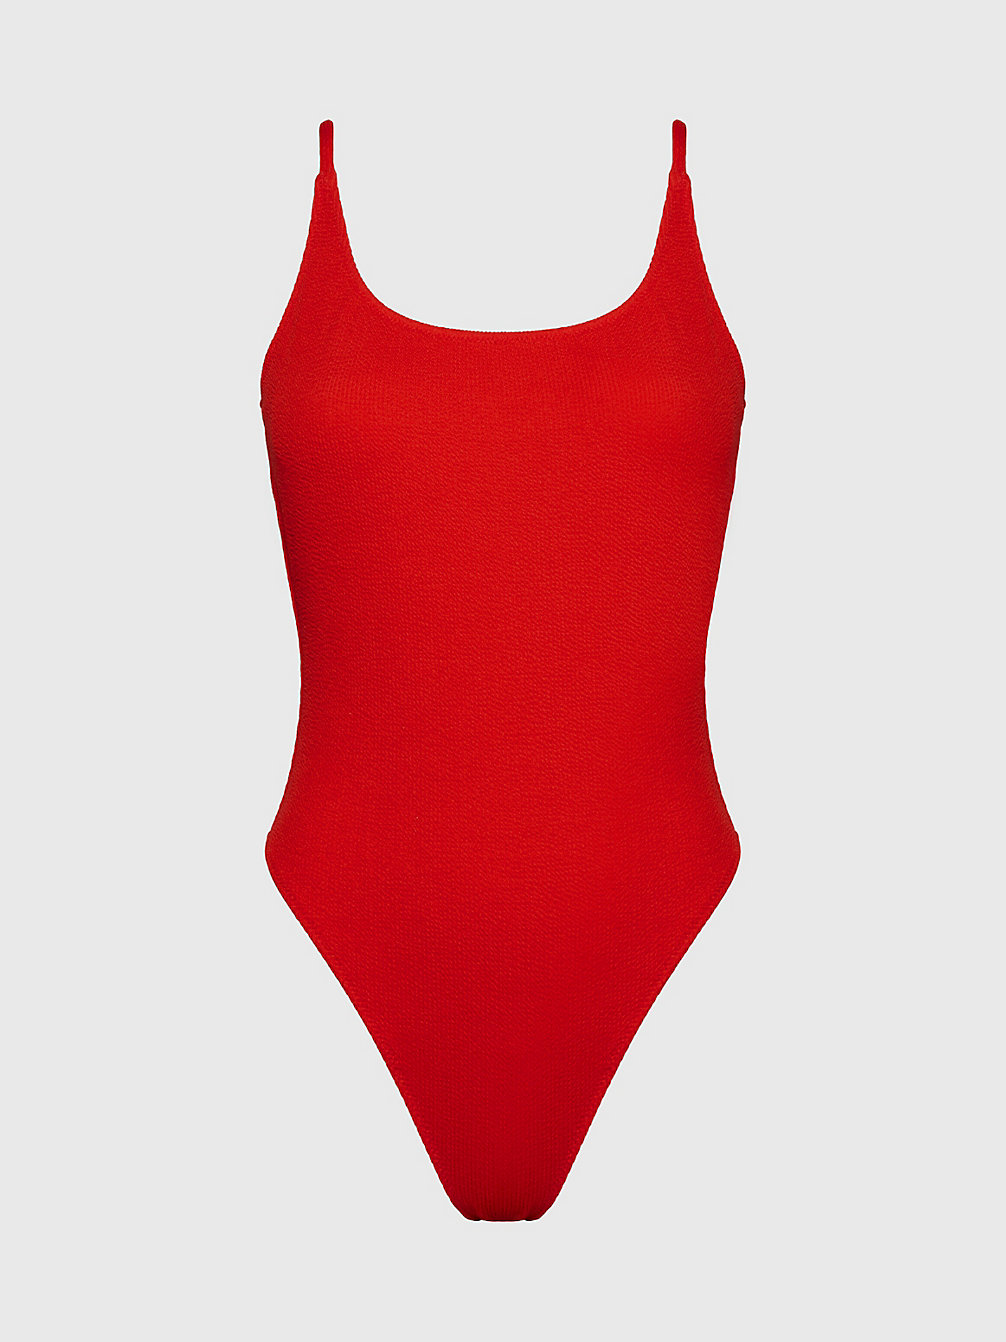 CAJUN RED > Strój Kąpielowy Z Dekoltem Z Tyłu W Kształcie Litery U - CK Texture > undefined Kobiety - Calvin Klein